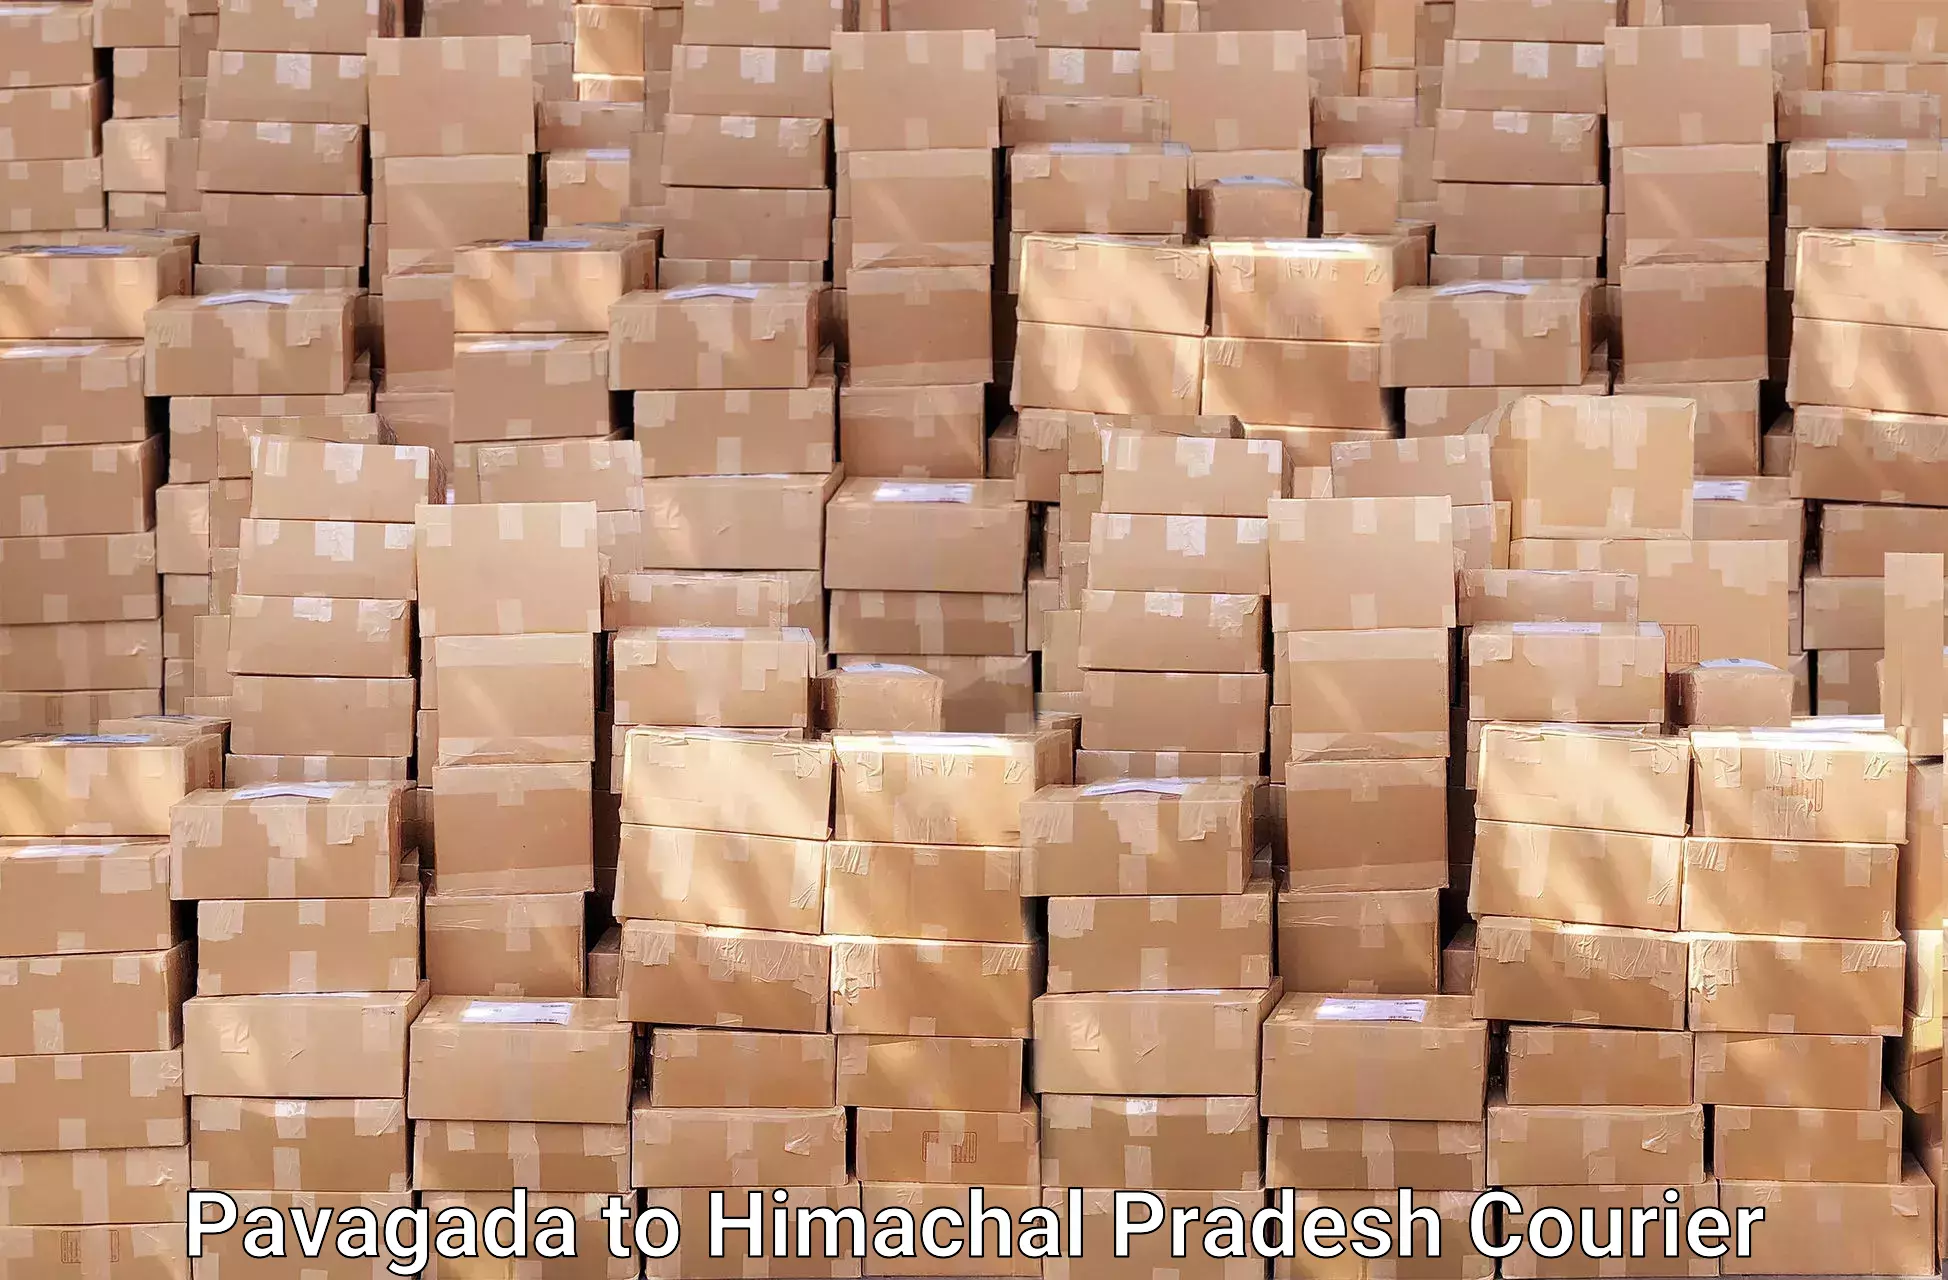 Furniture moving experts in Pavagada to Himachal Pradesh